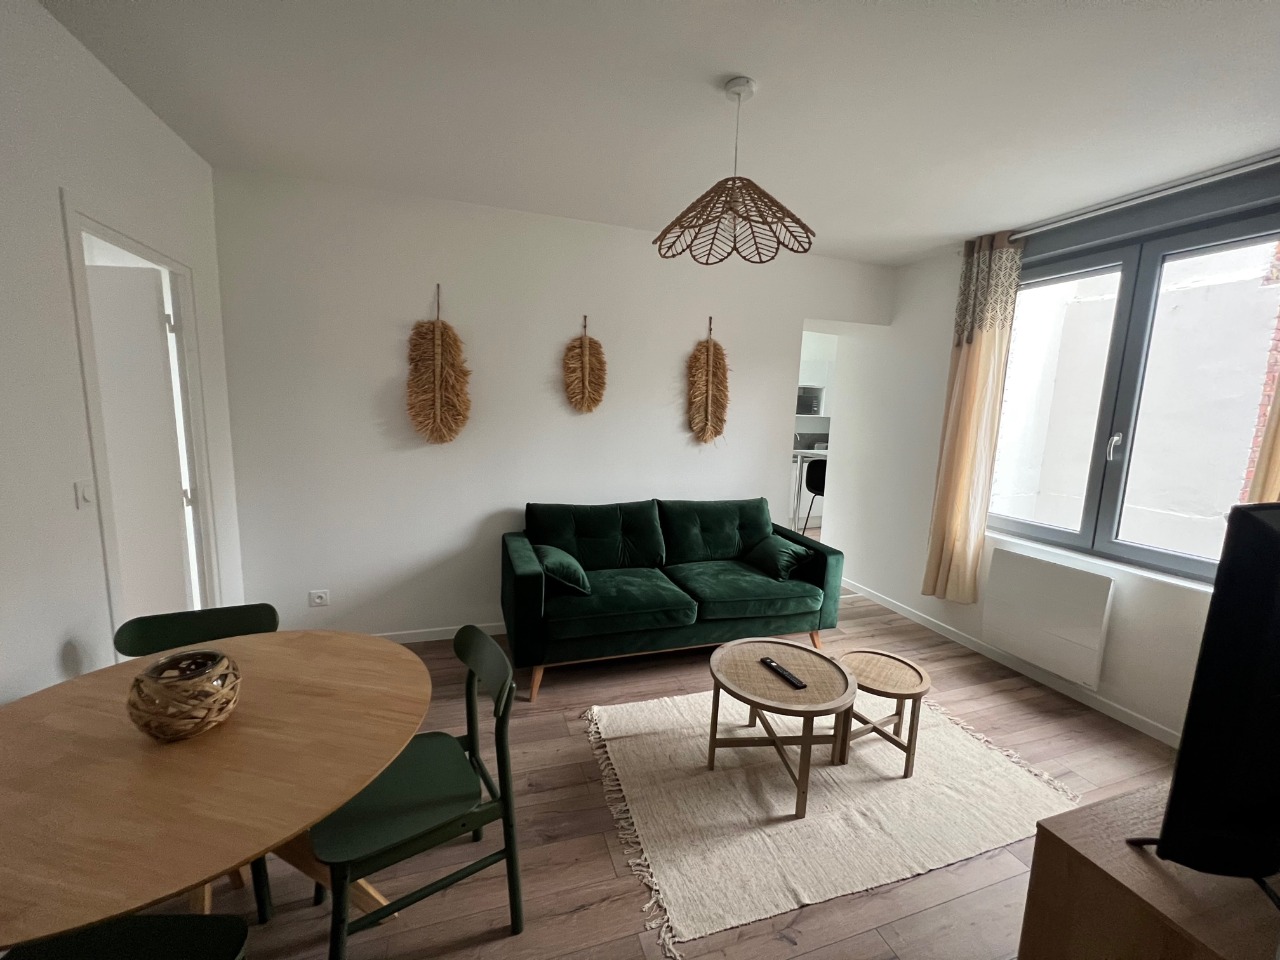 Vente appartement 59000 Lille - Gambetta - T4 entièrement rénové avec terrasse et cave